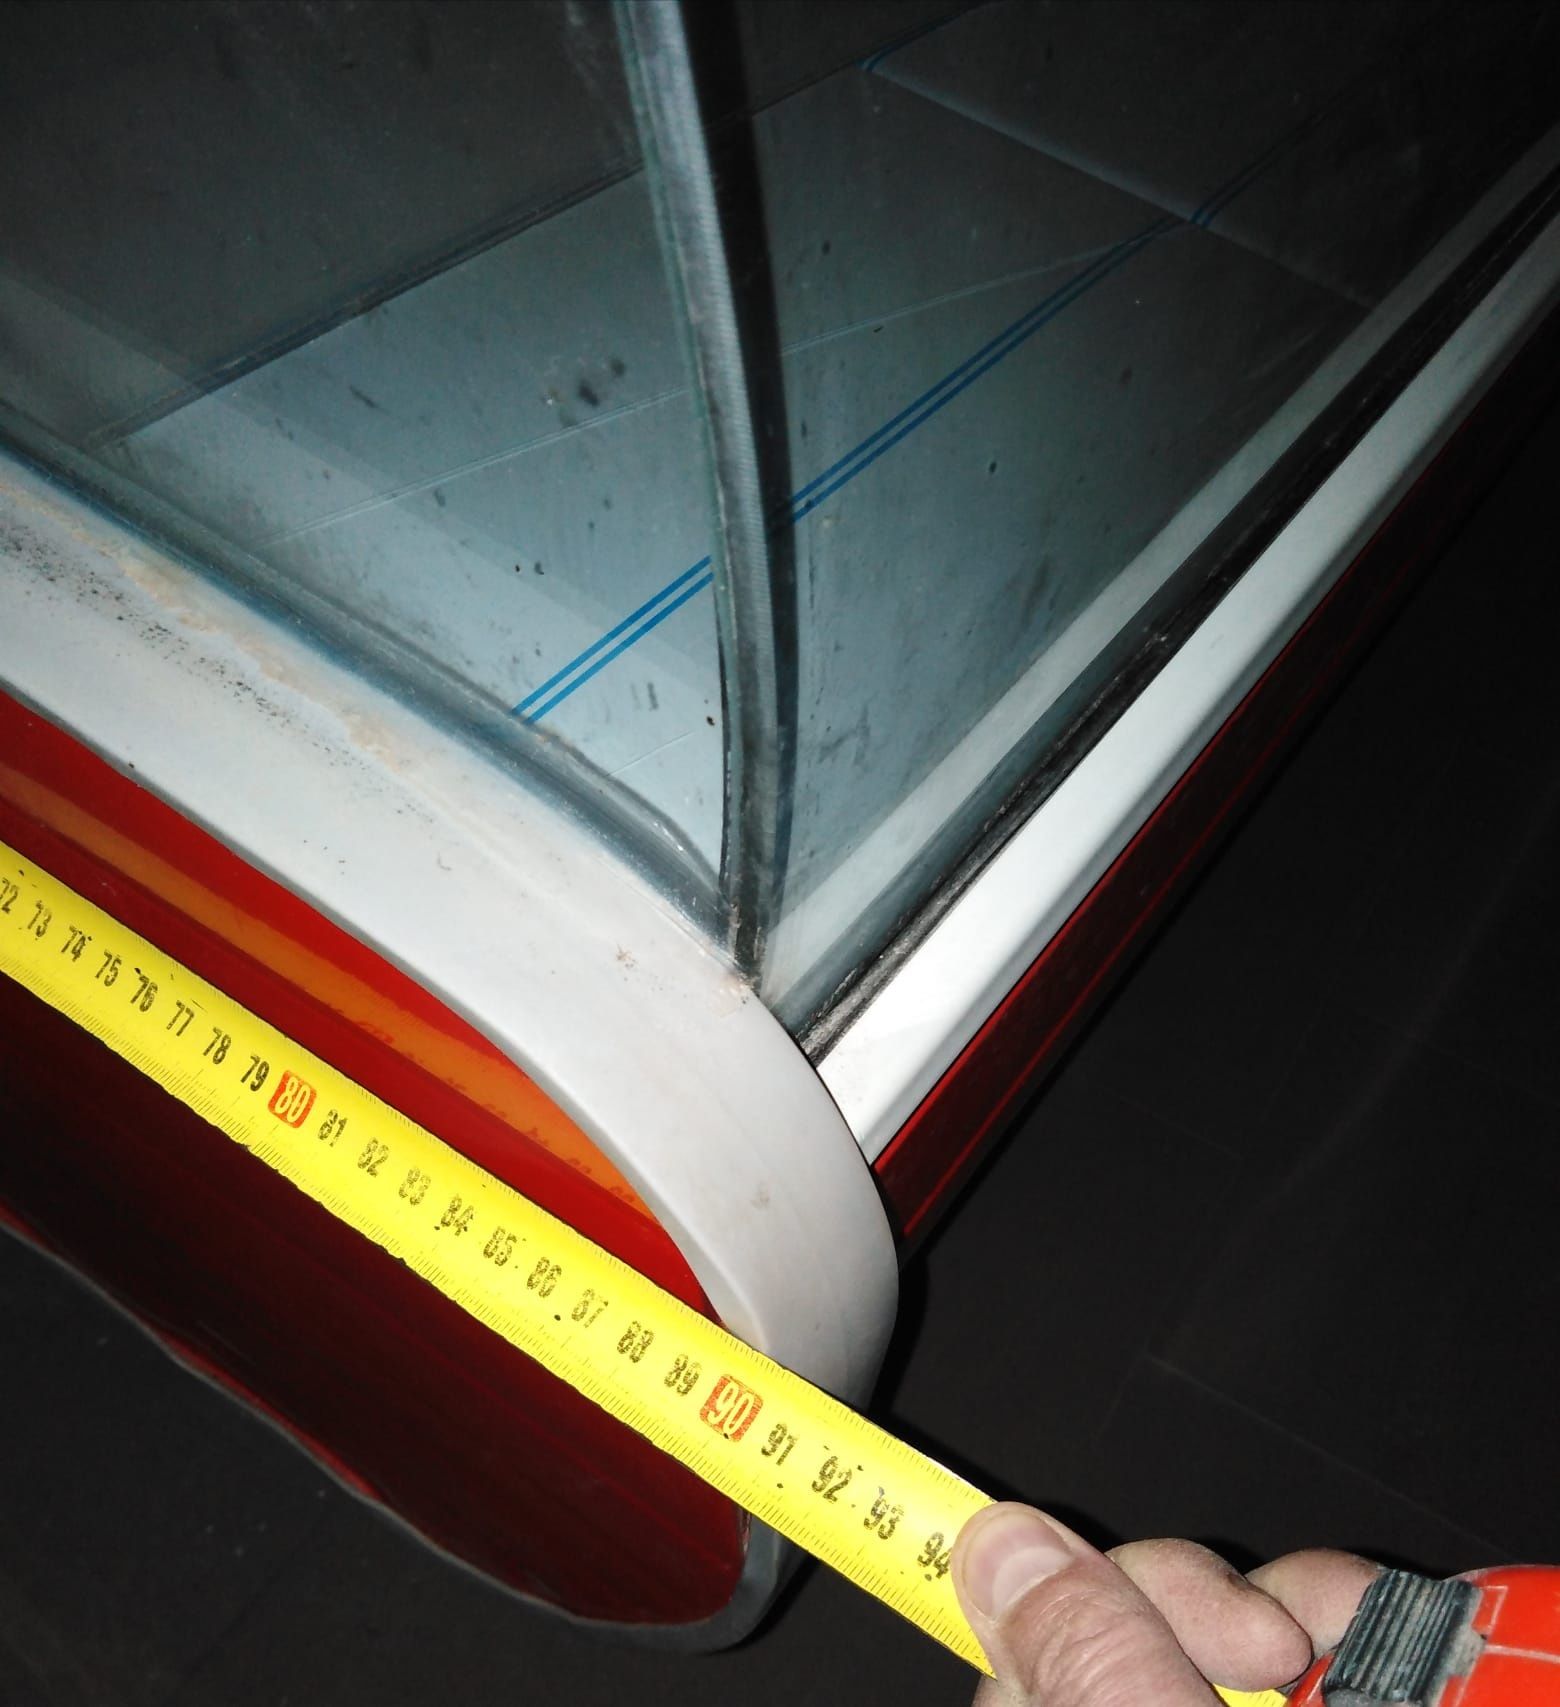 Vând vitrină frigorifică 3 metri lungime